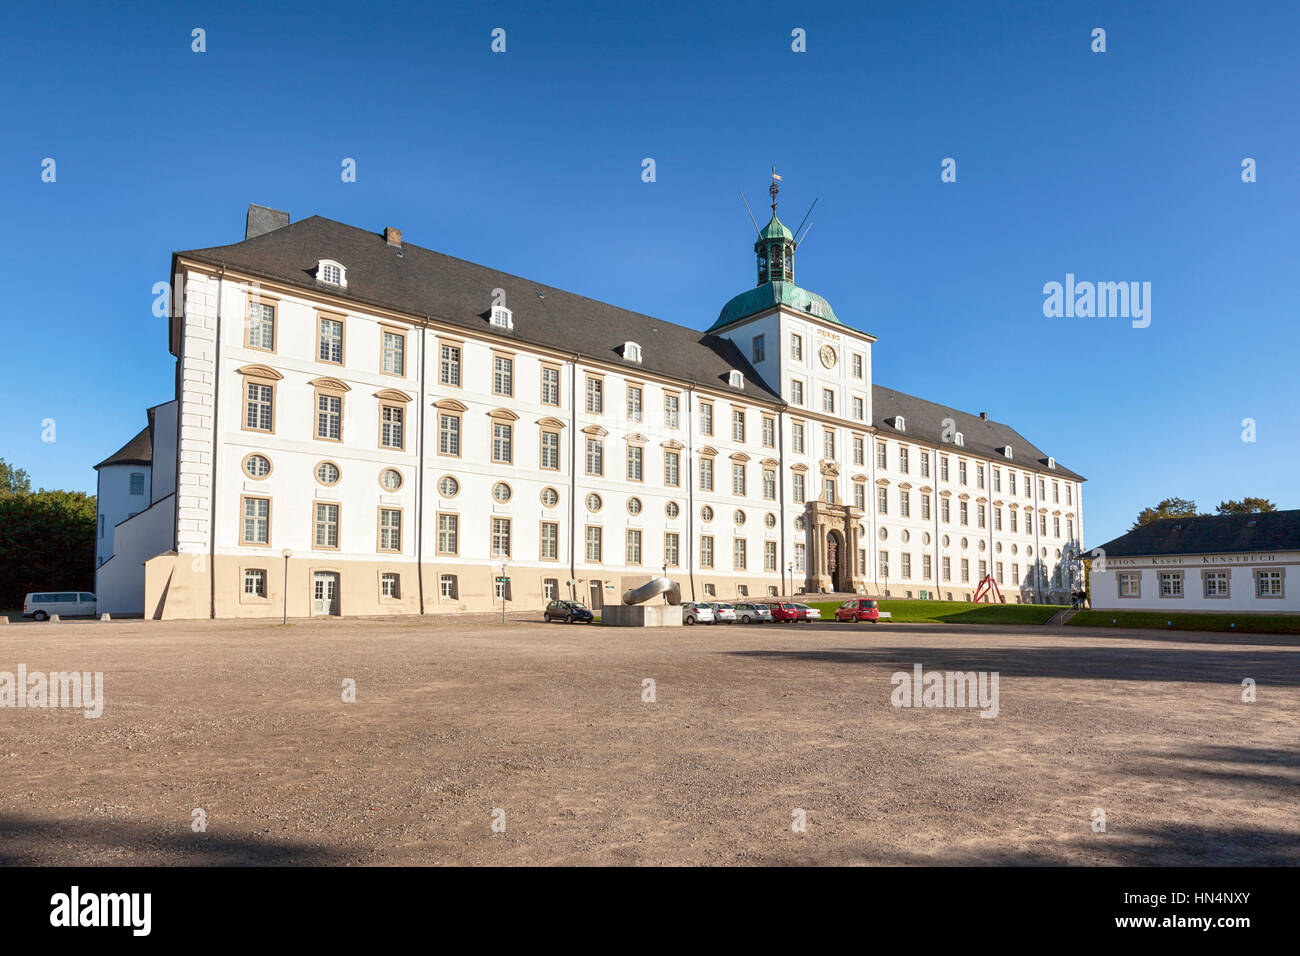 Schleswig, Allemagne - 27 septembre 2015 : le château de Gottorf, construit à la fin du xviie siècle, depuis 2006 Siège de l'État et l'histoire culturelle de l'Art Museum Banque D'Images